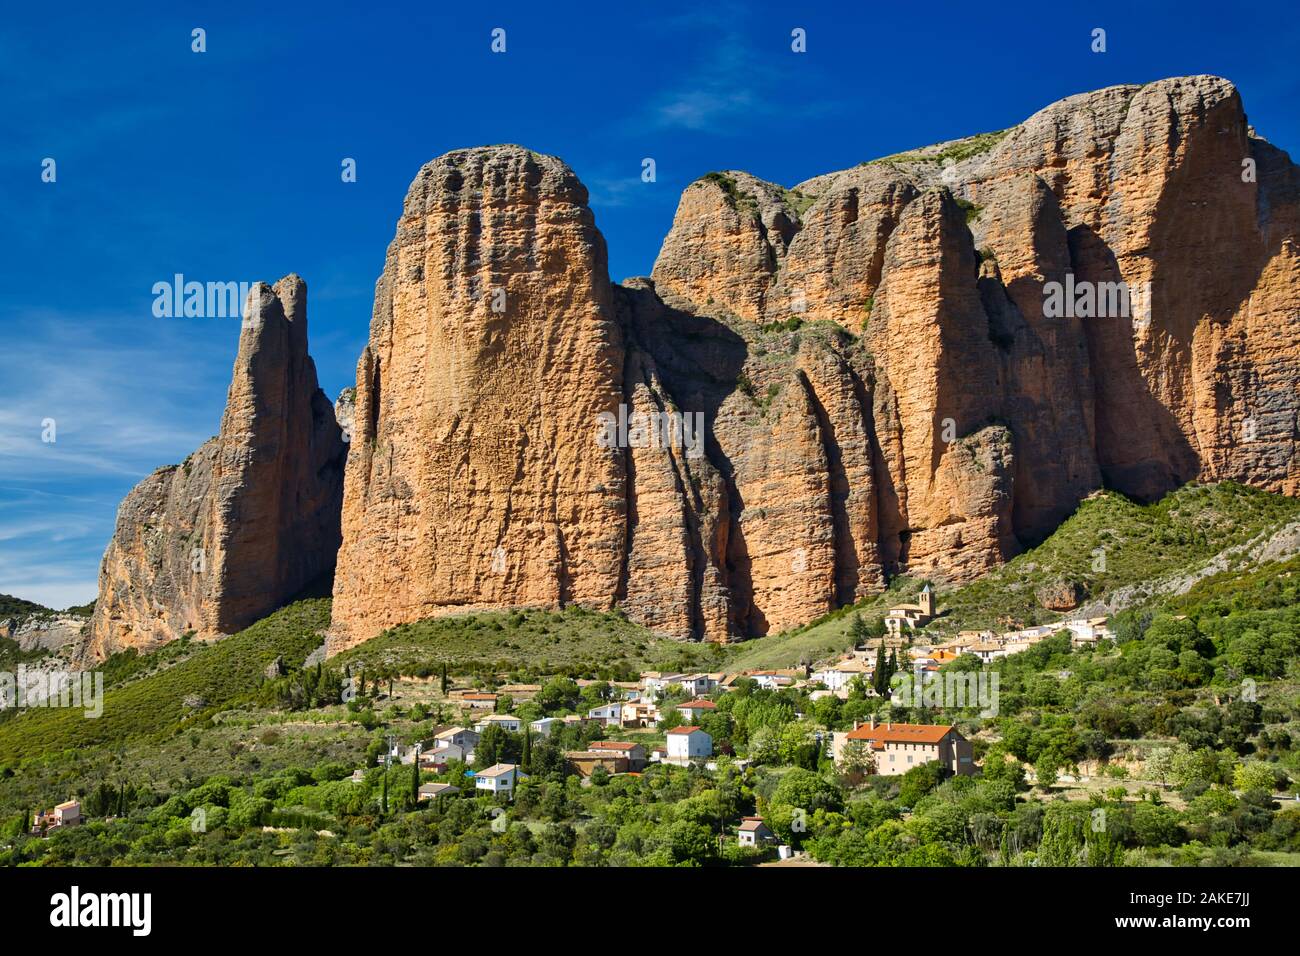 Los Mallos de Riglos, sculpted rocks in Aragon, Spain Stock Photo - Alamy